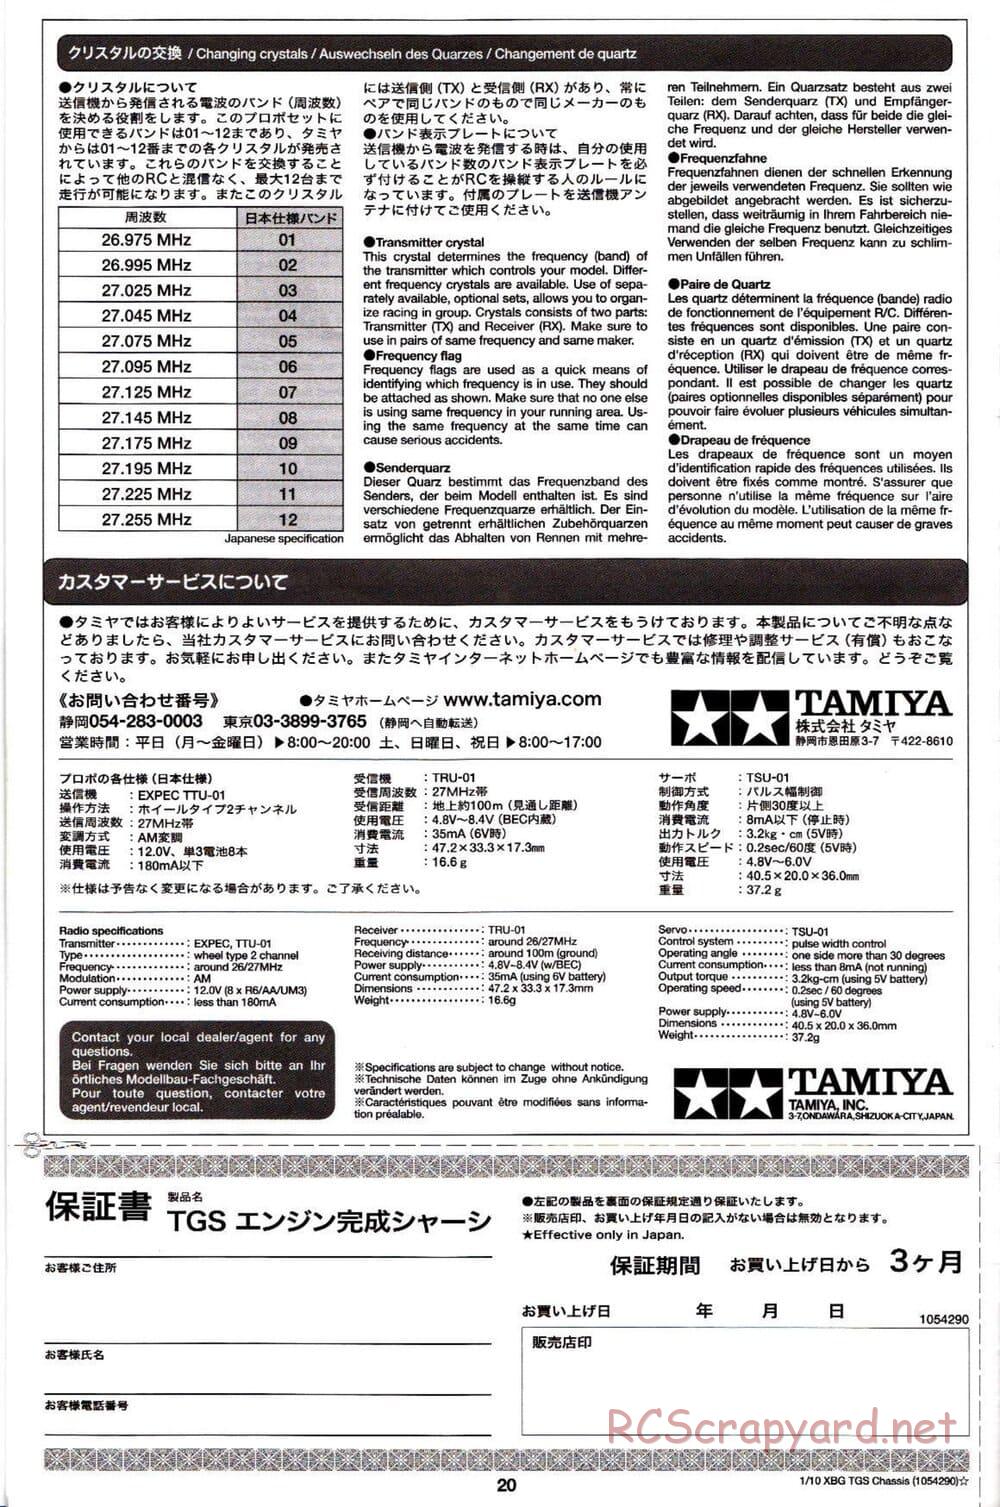 Tamiya - TGS Chassis - Manual - Page 20